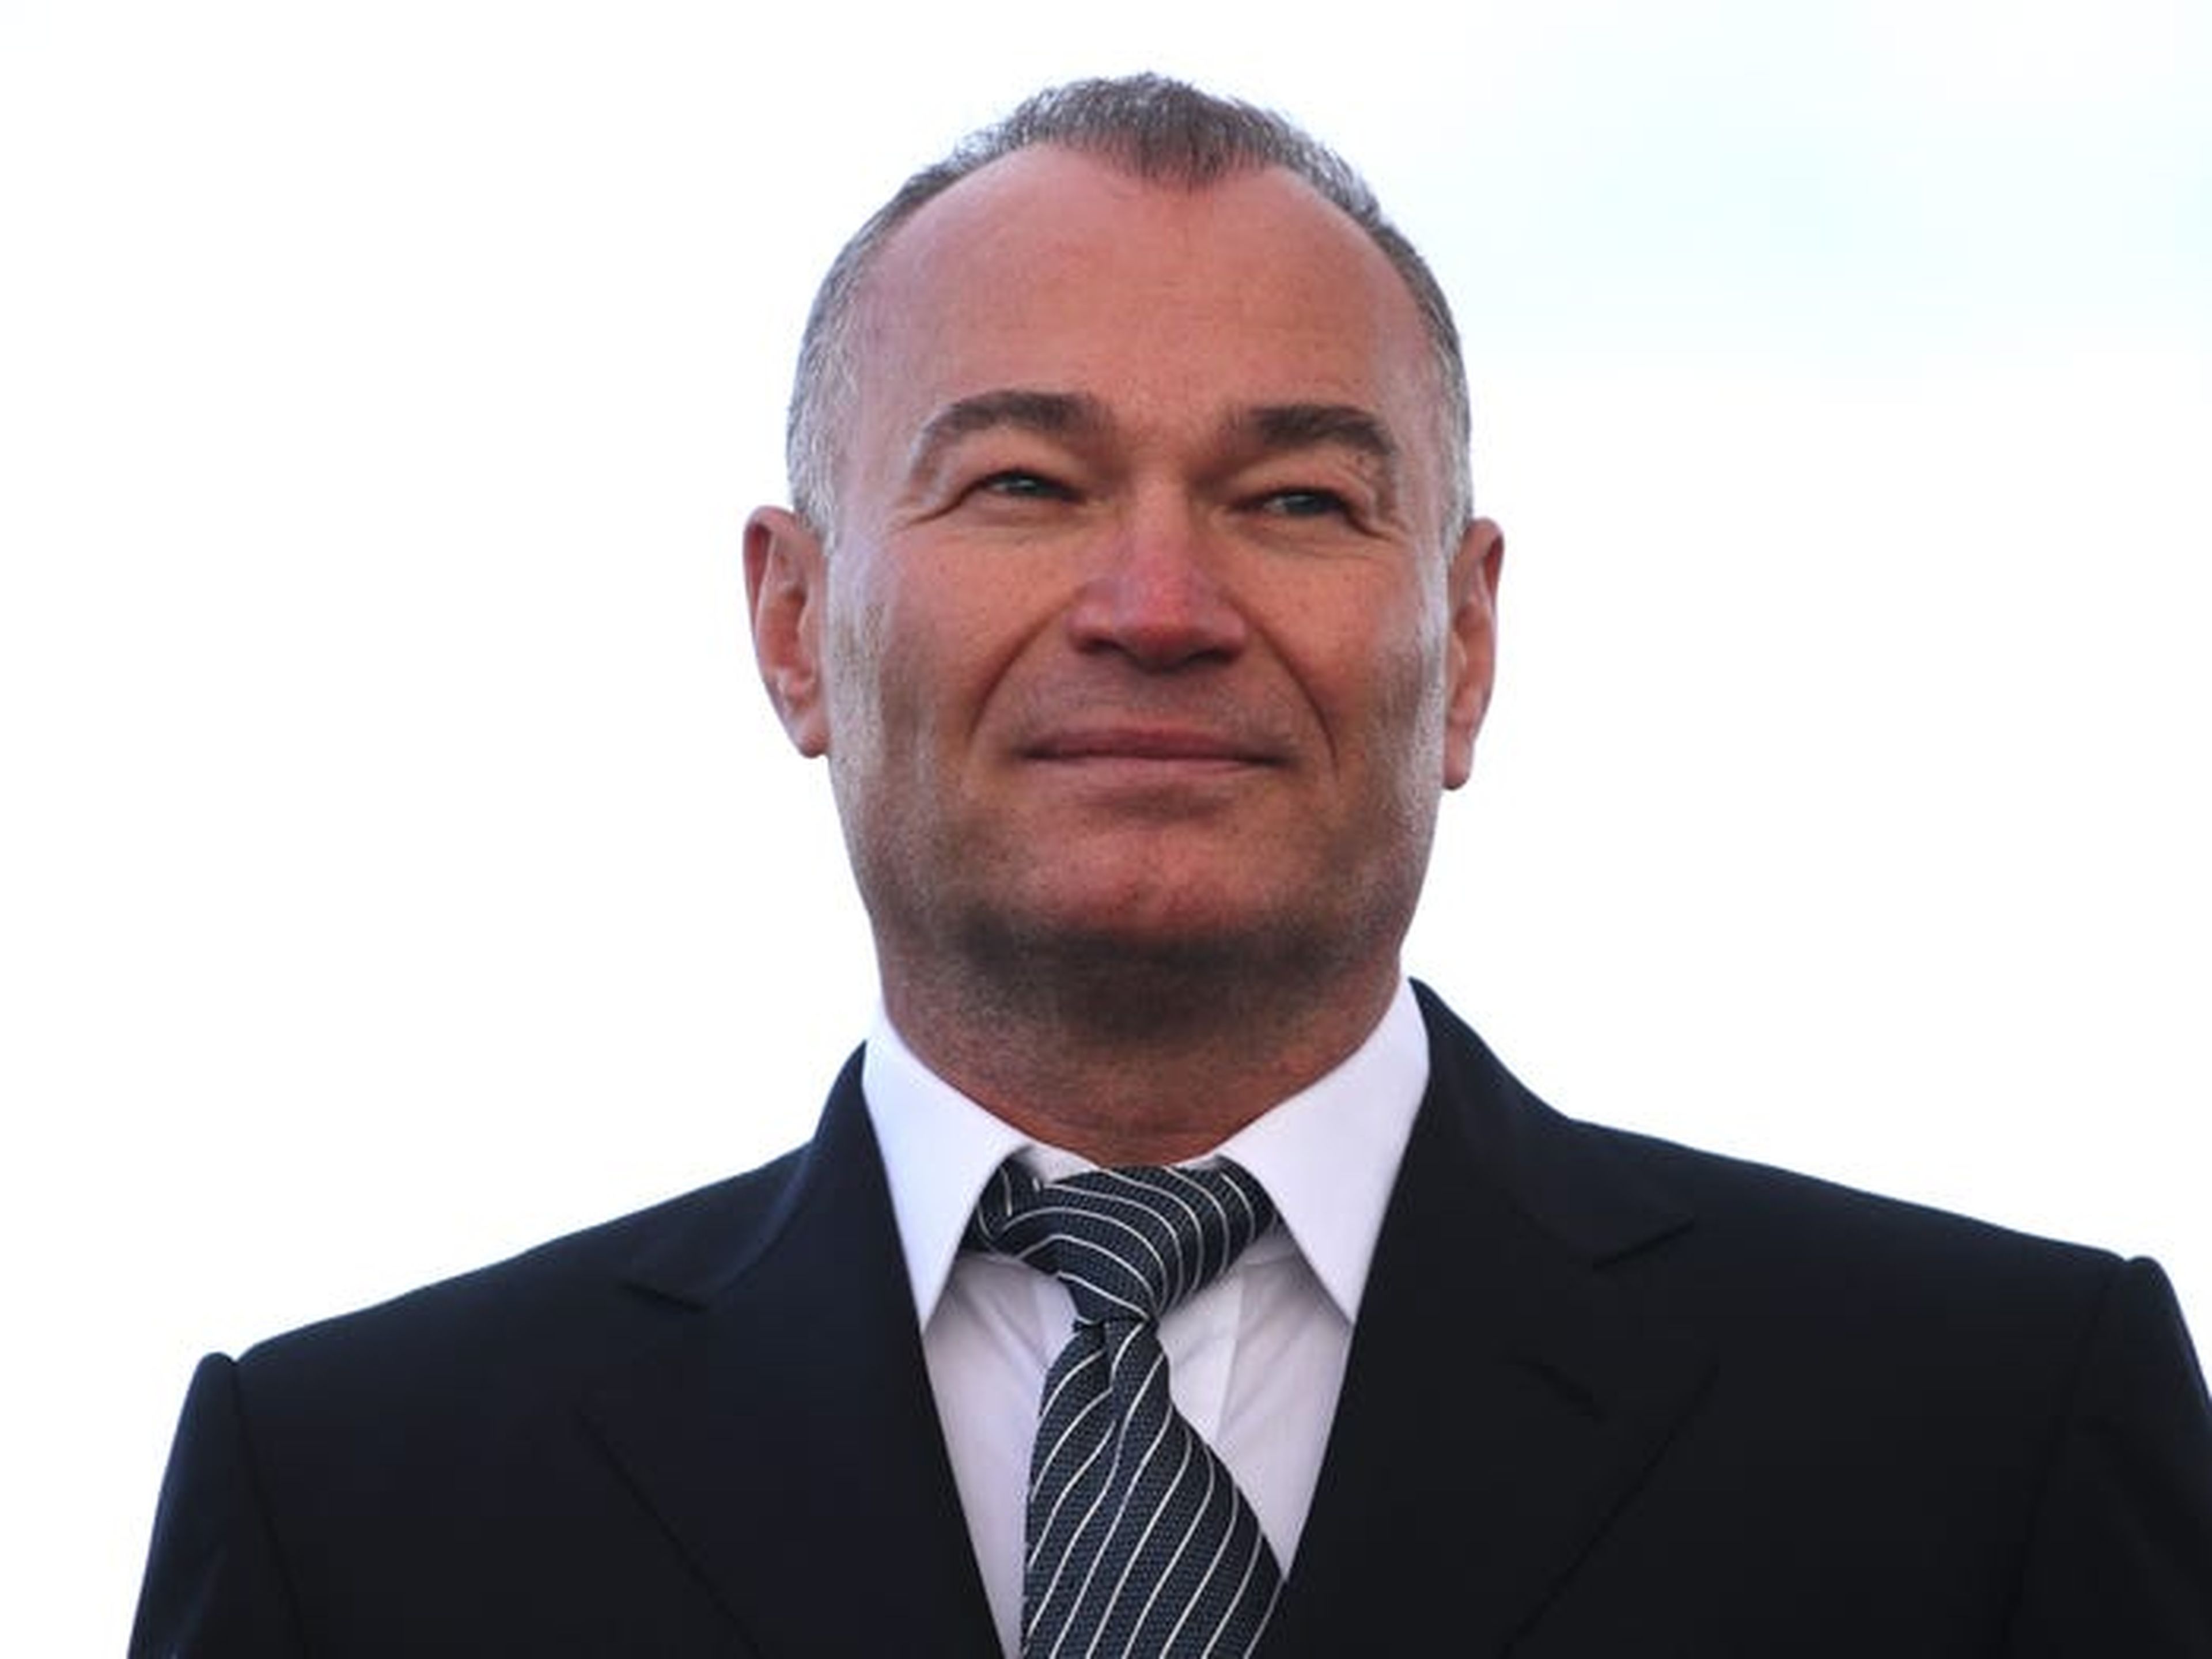 El presidente de la Junta Directiva del Aeropuerto Internacional de Sheremetyevo, Alexander Ponomarenko.